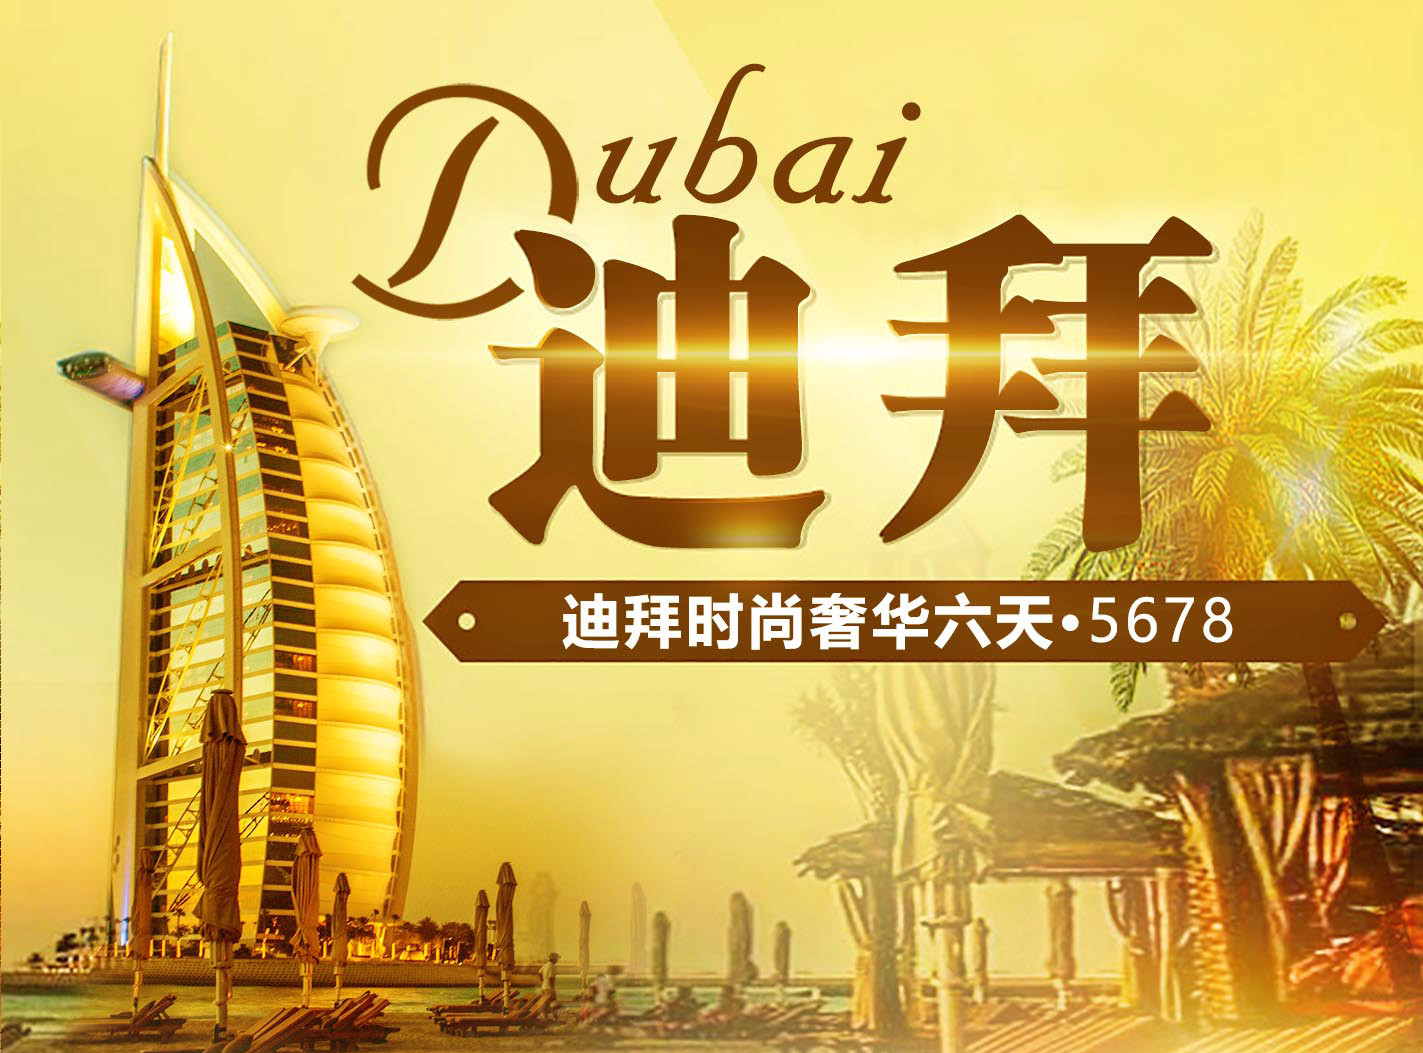 迪拜自由行必玩热门旅游景点与一日游行程、景点门票、交通票券 - Klook客路 中国